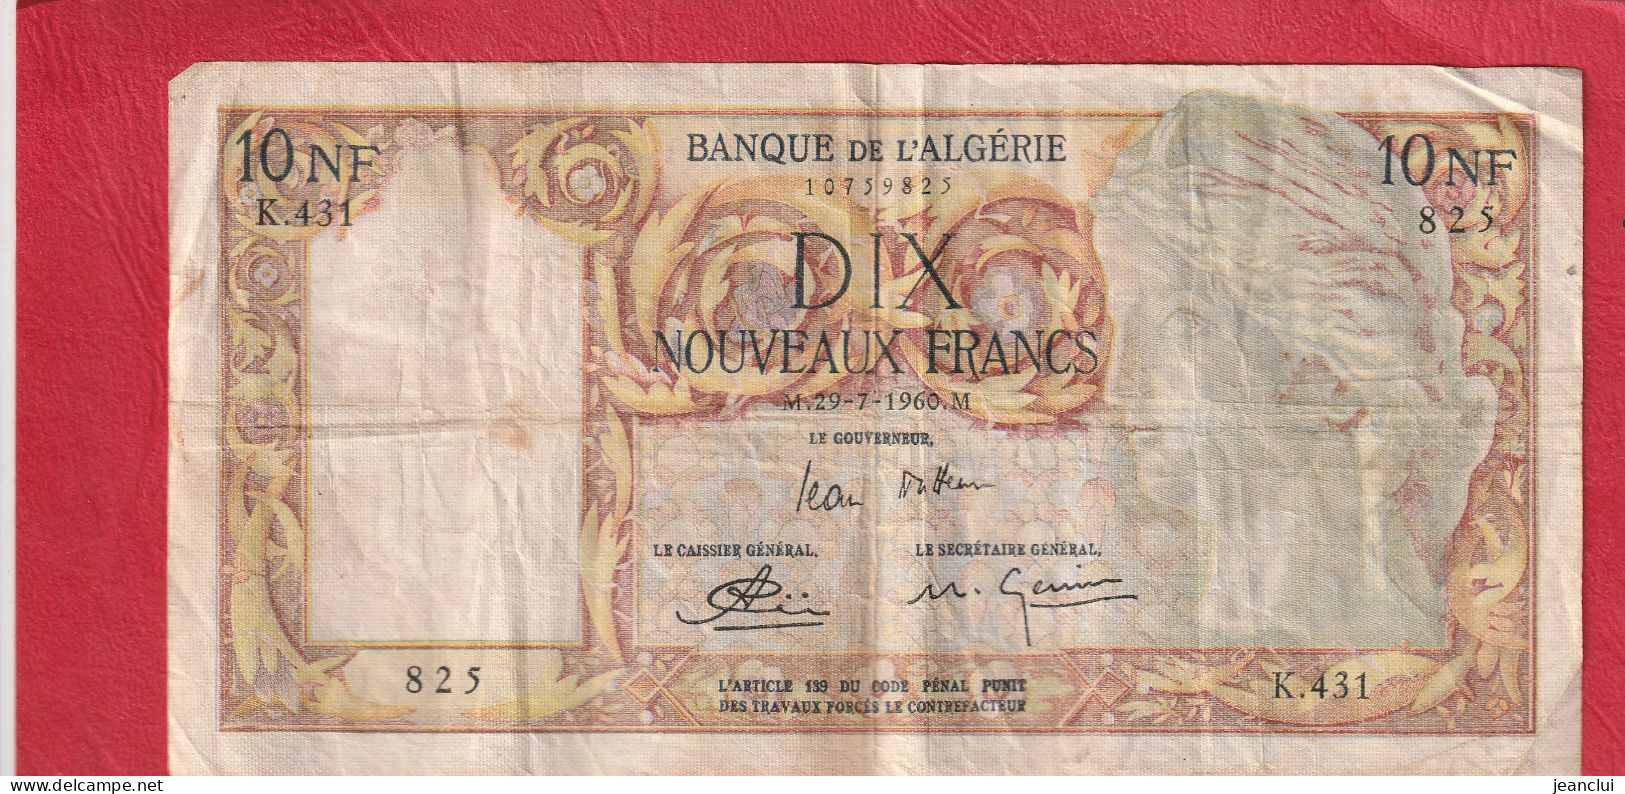 BANQUE DE L'ALGERIE  .  10 NOUVEAUX FRANCS  .  29-7-1960  . SERIE K.431  .  N° 825  .  2 SCANNES  .  BILLET USITE - Argelia